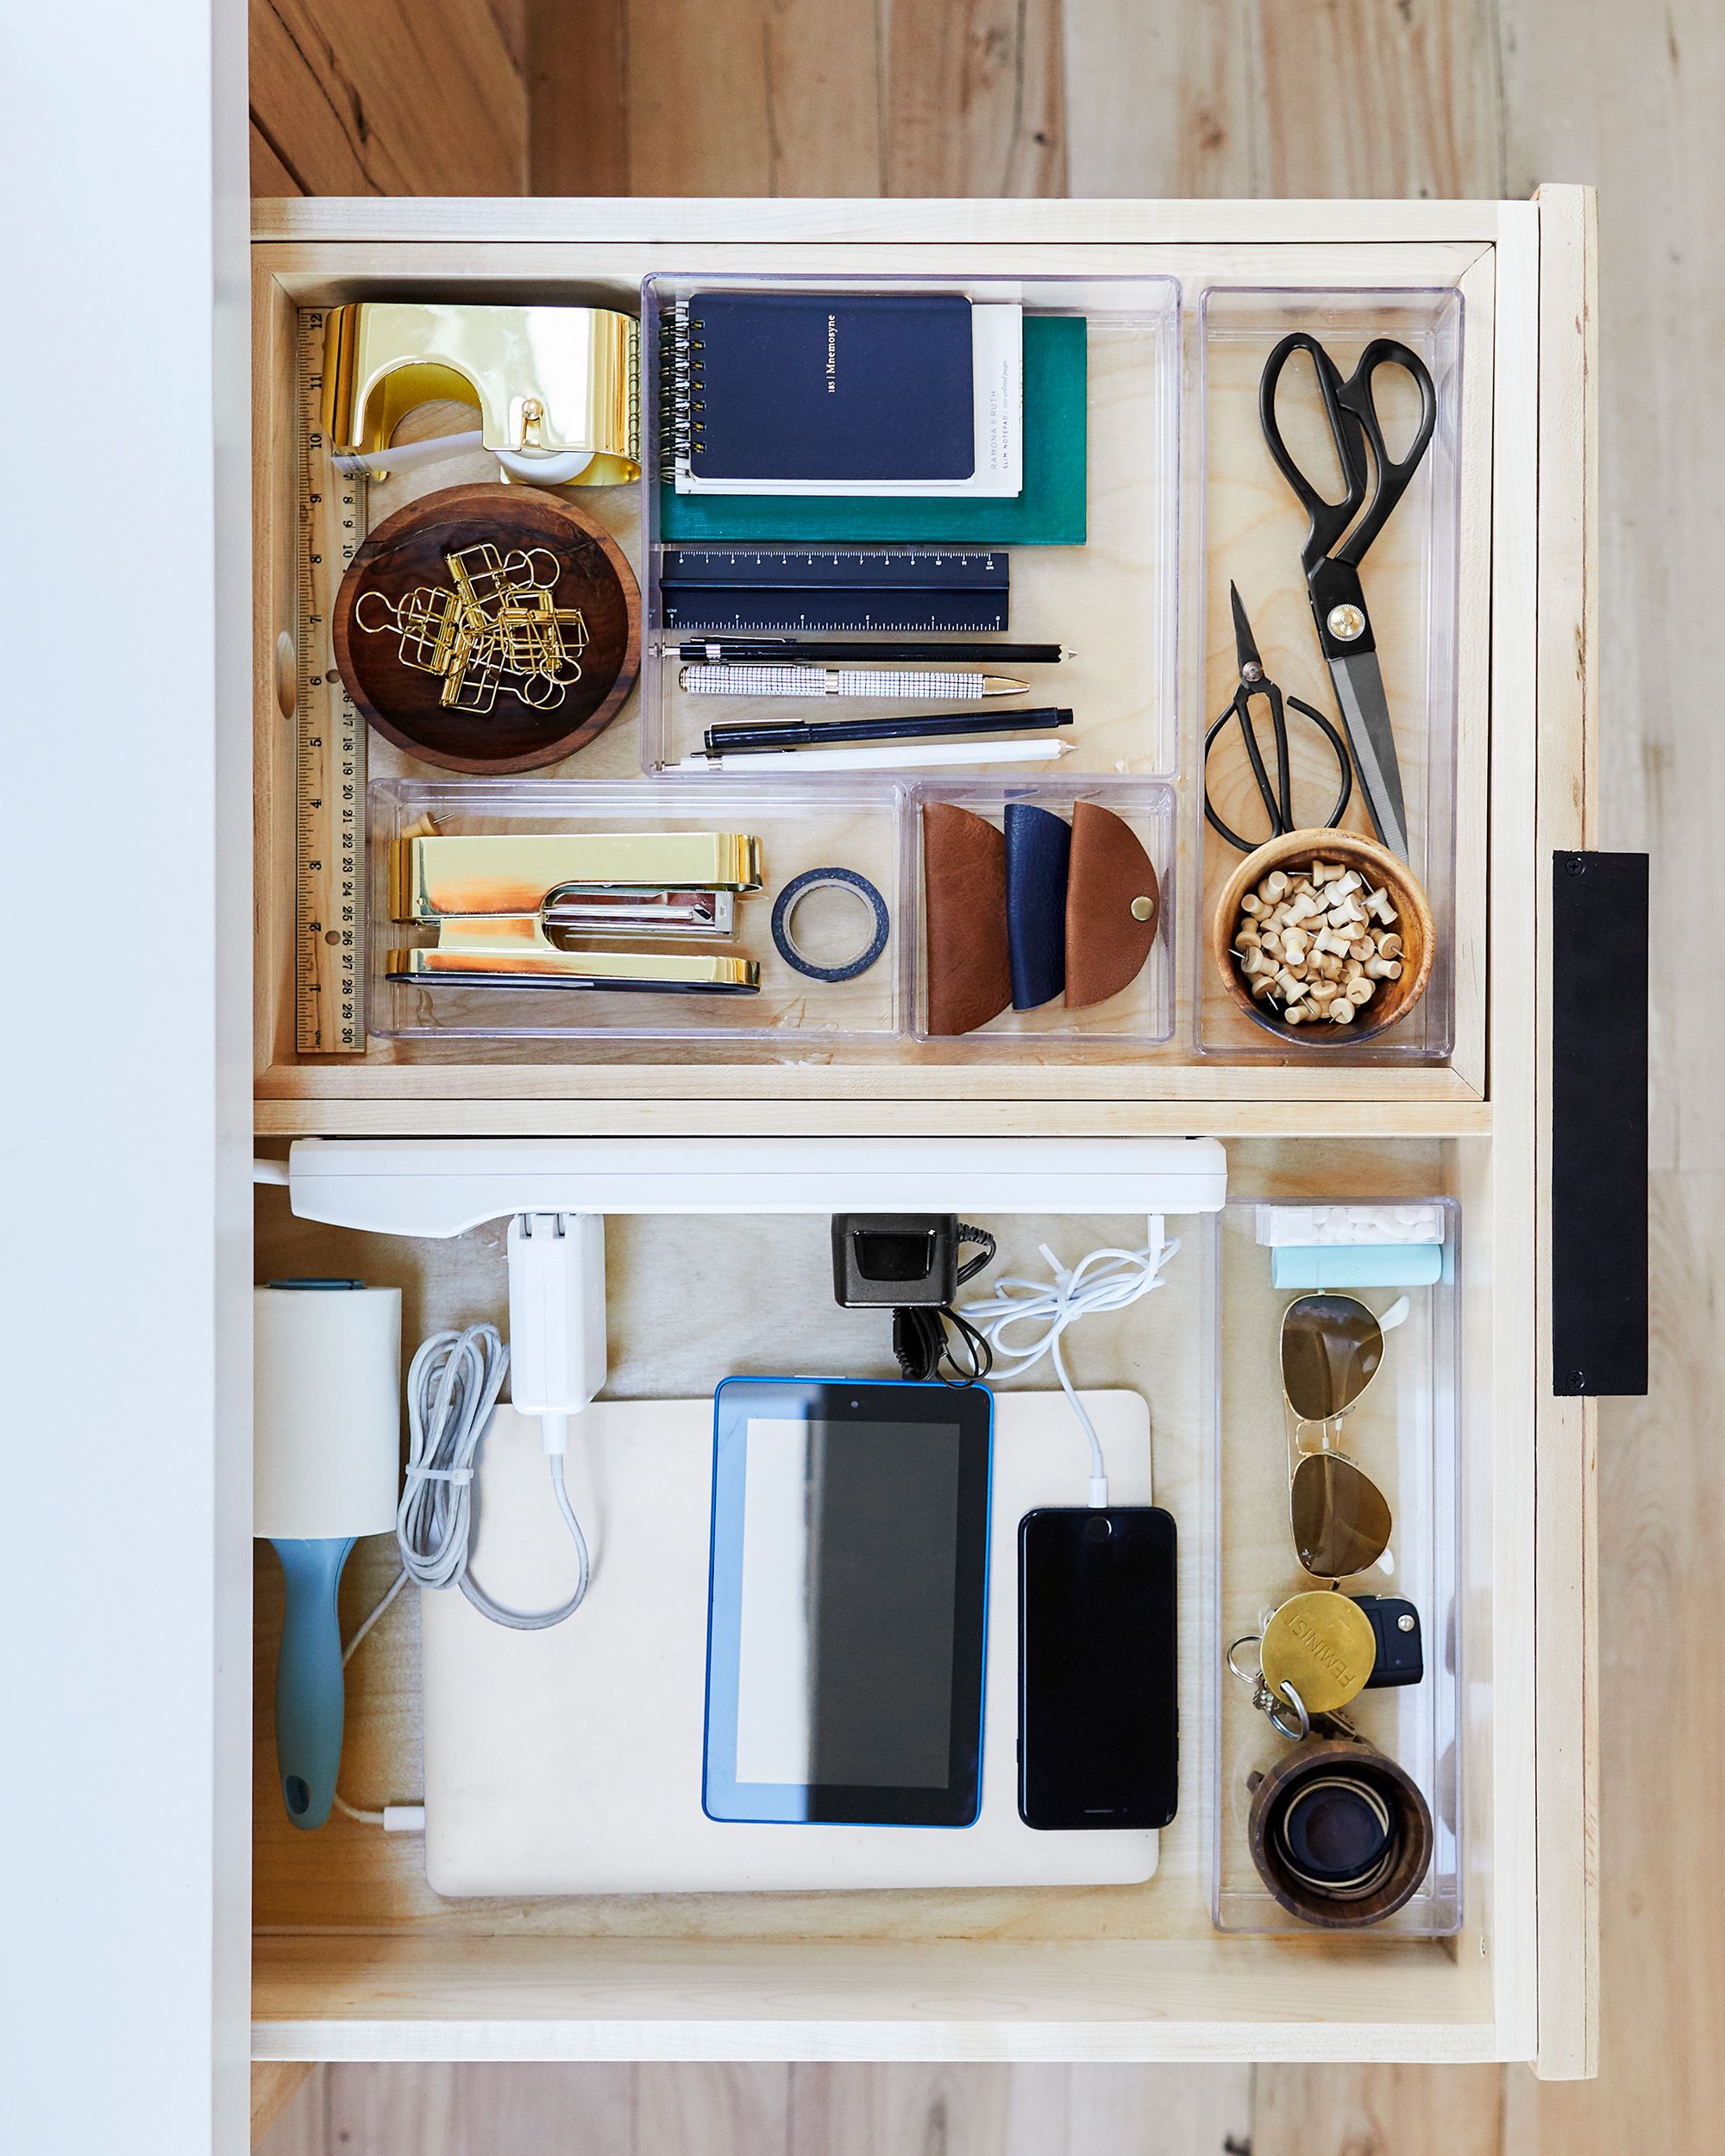 30 Diy Storage Ideas Easy Home, Shelves Organizers Home